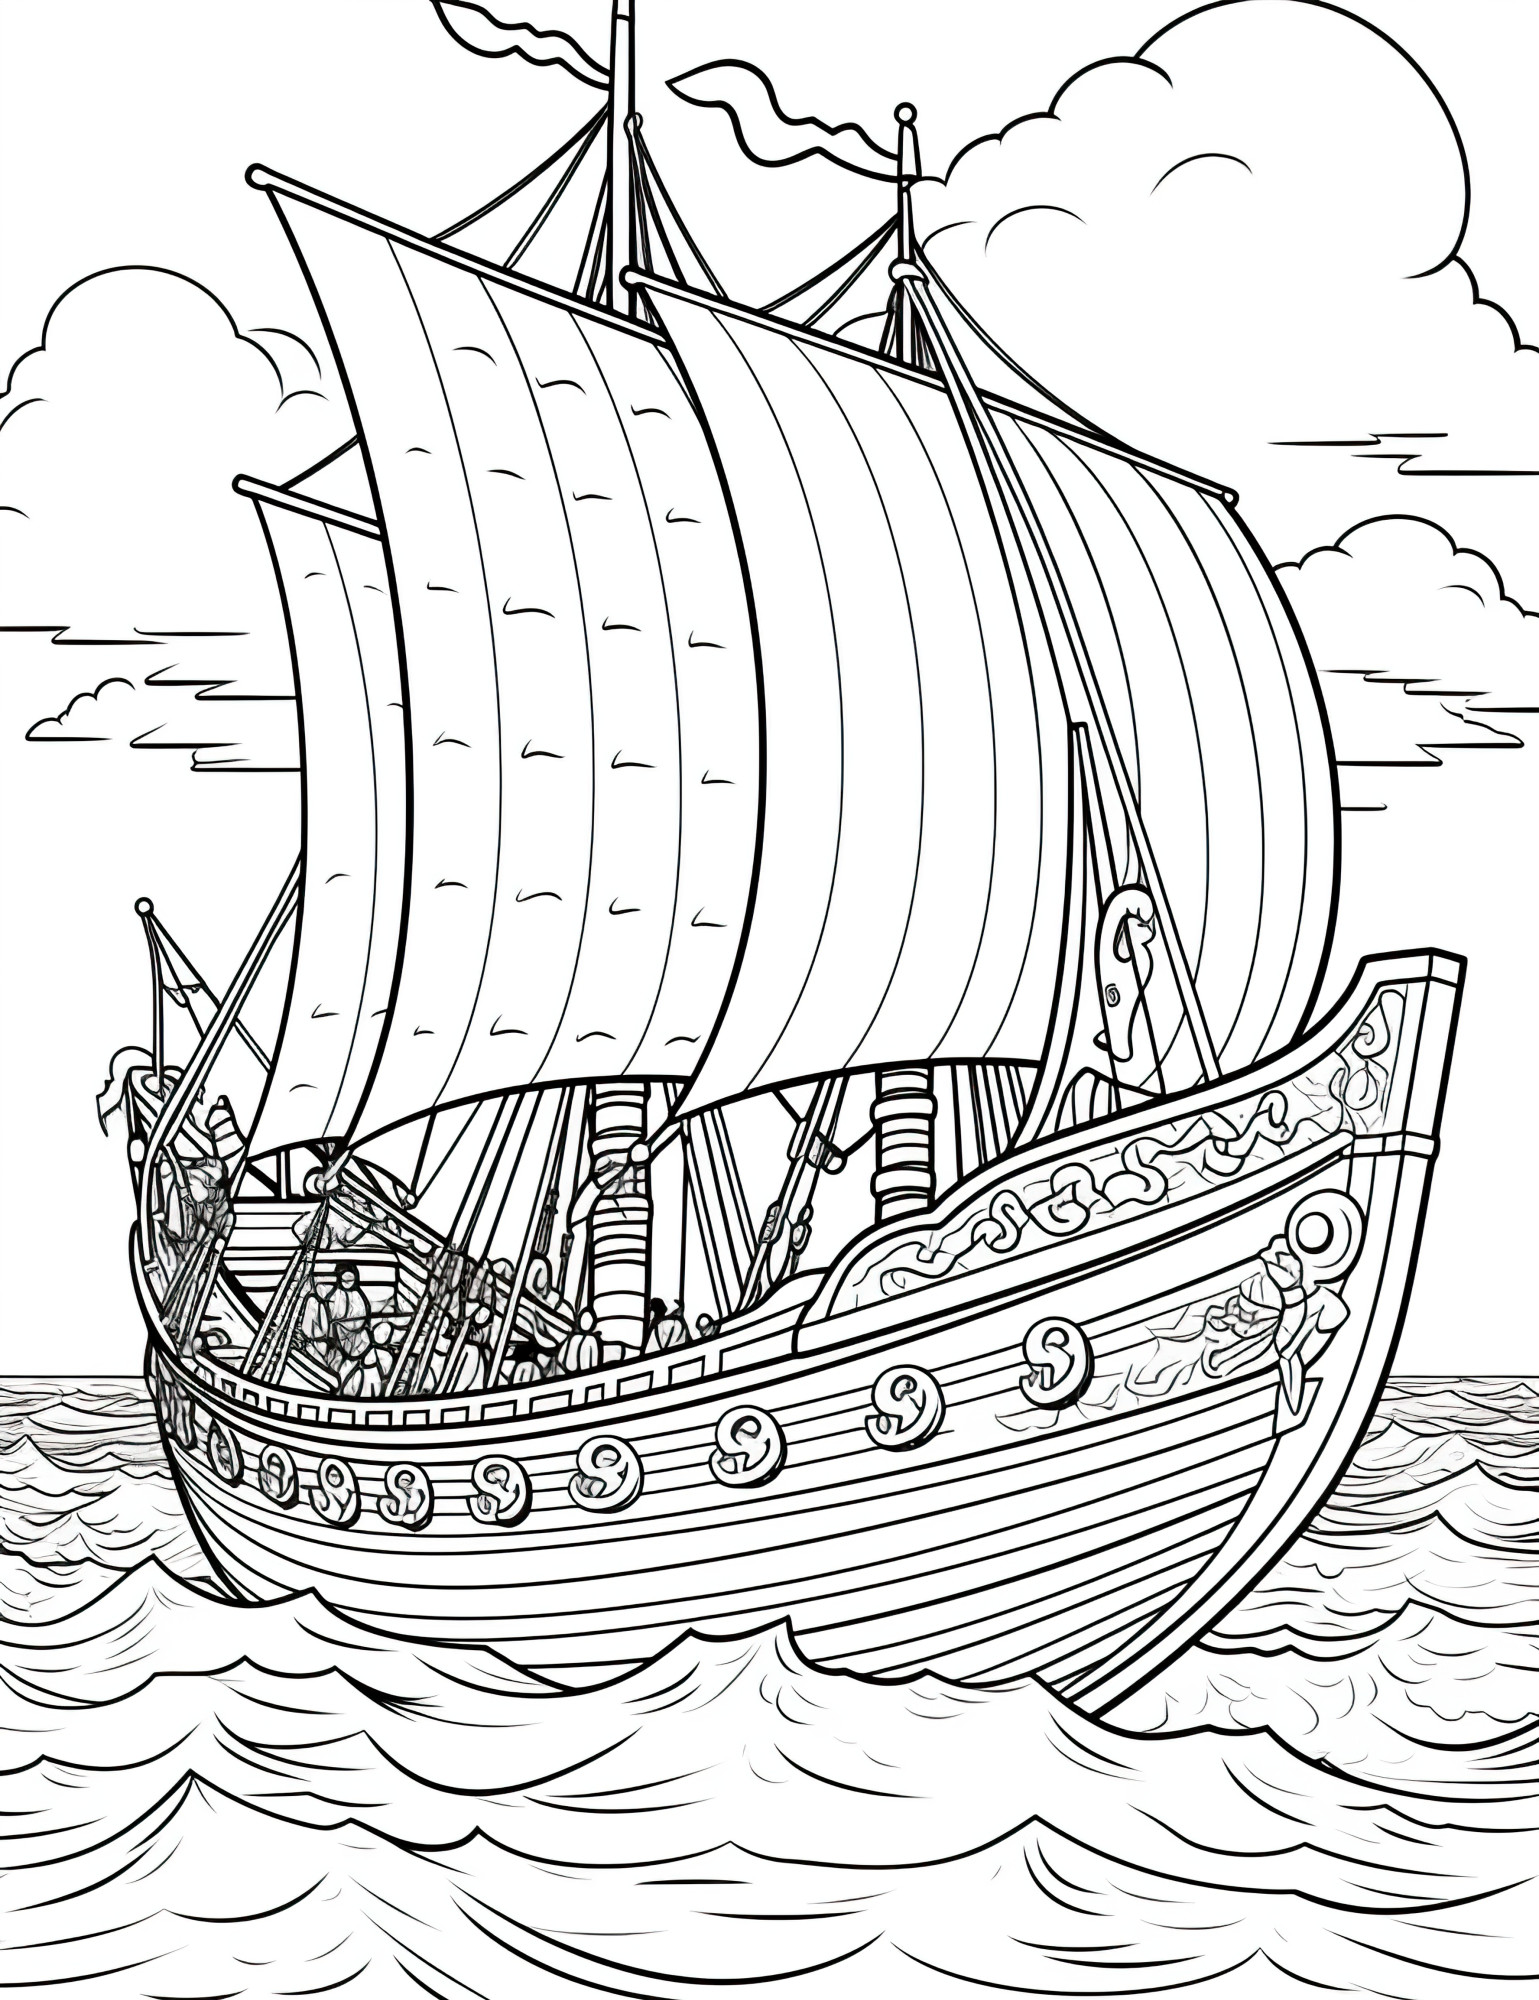 Раскраска для детей: большой красивый корабль с парусами «Сквозь пелену тумана»